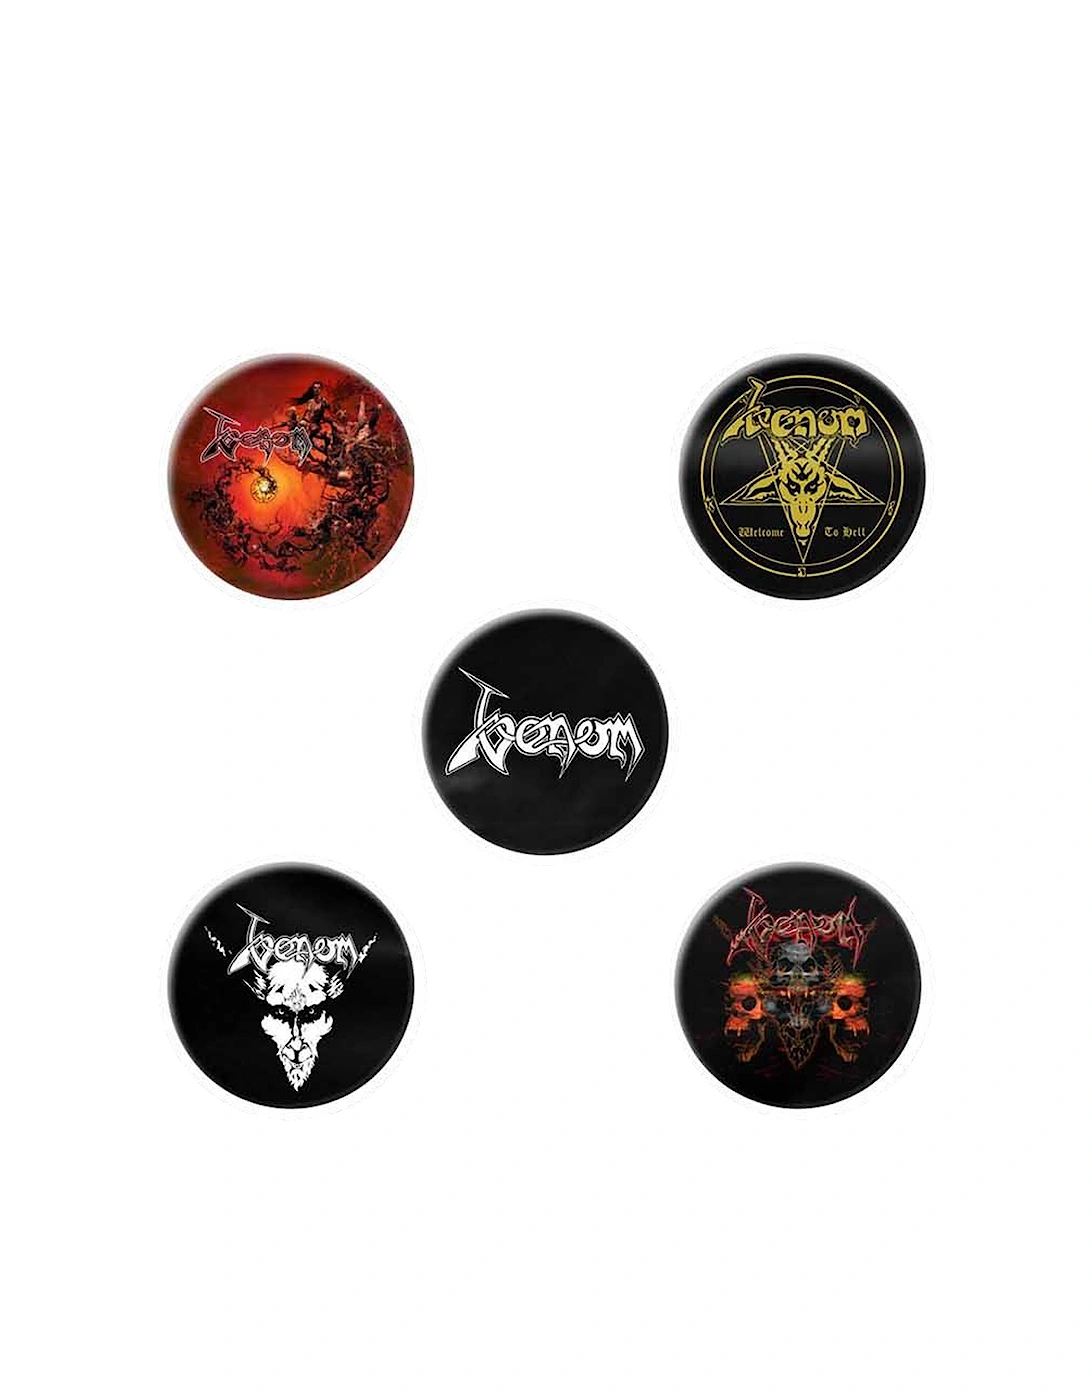 Black Metal Badge Set (Pack of 5), 2 of 1